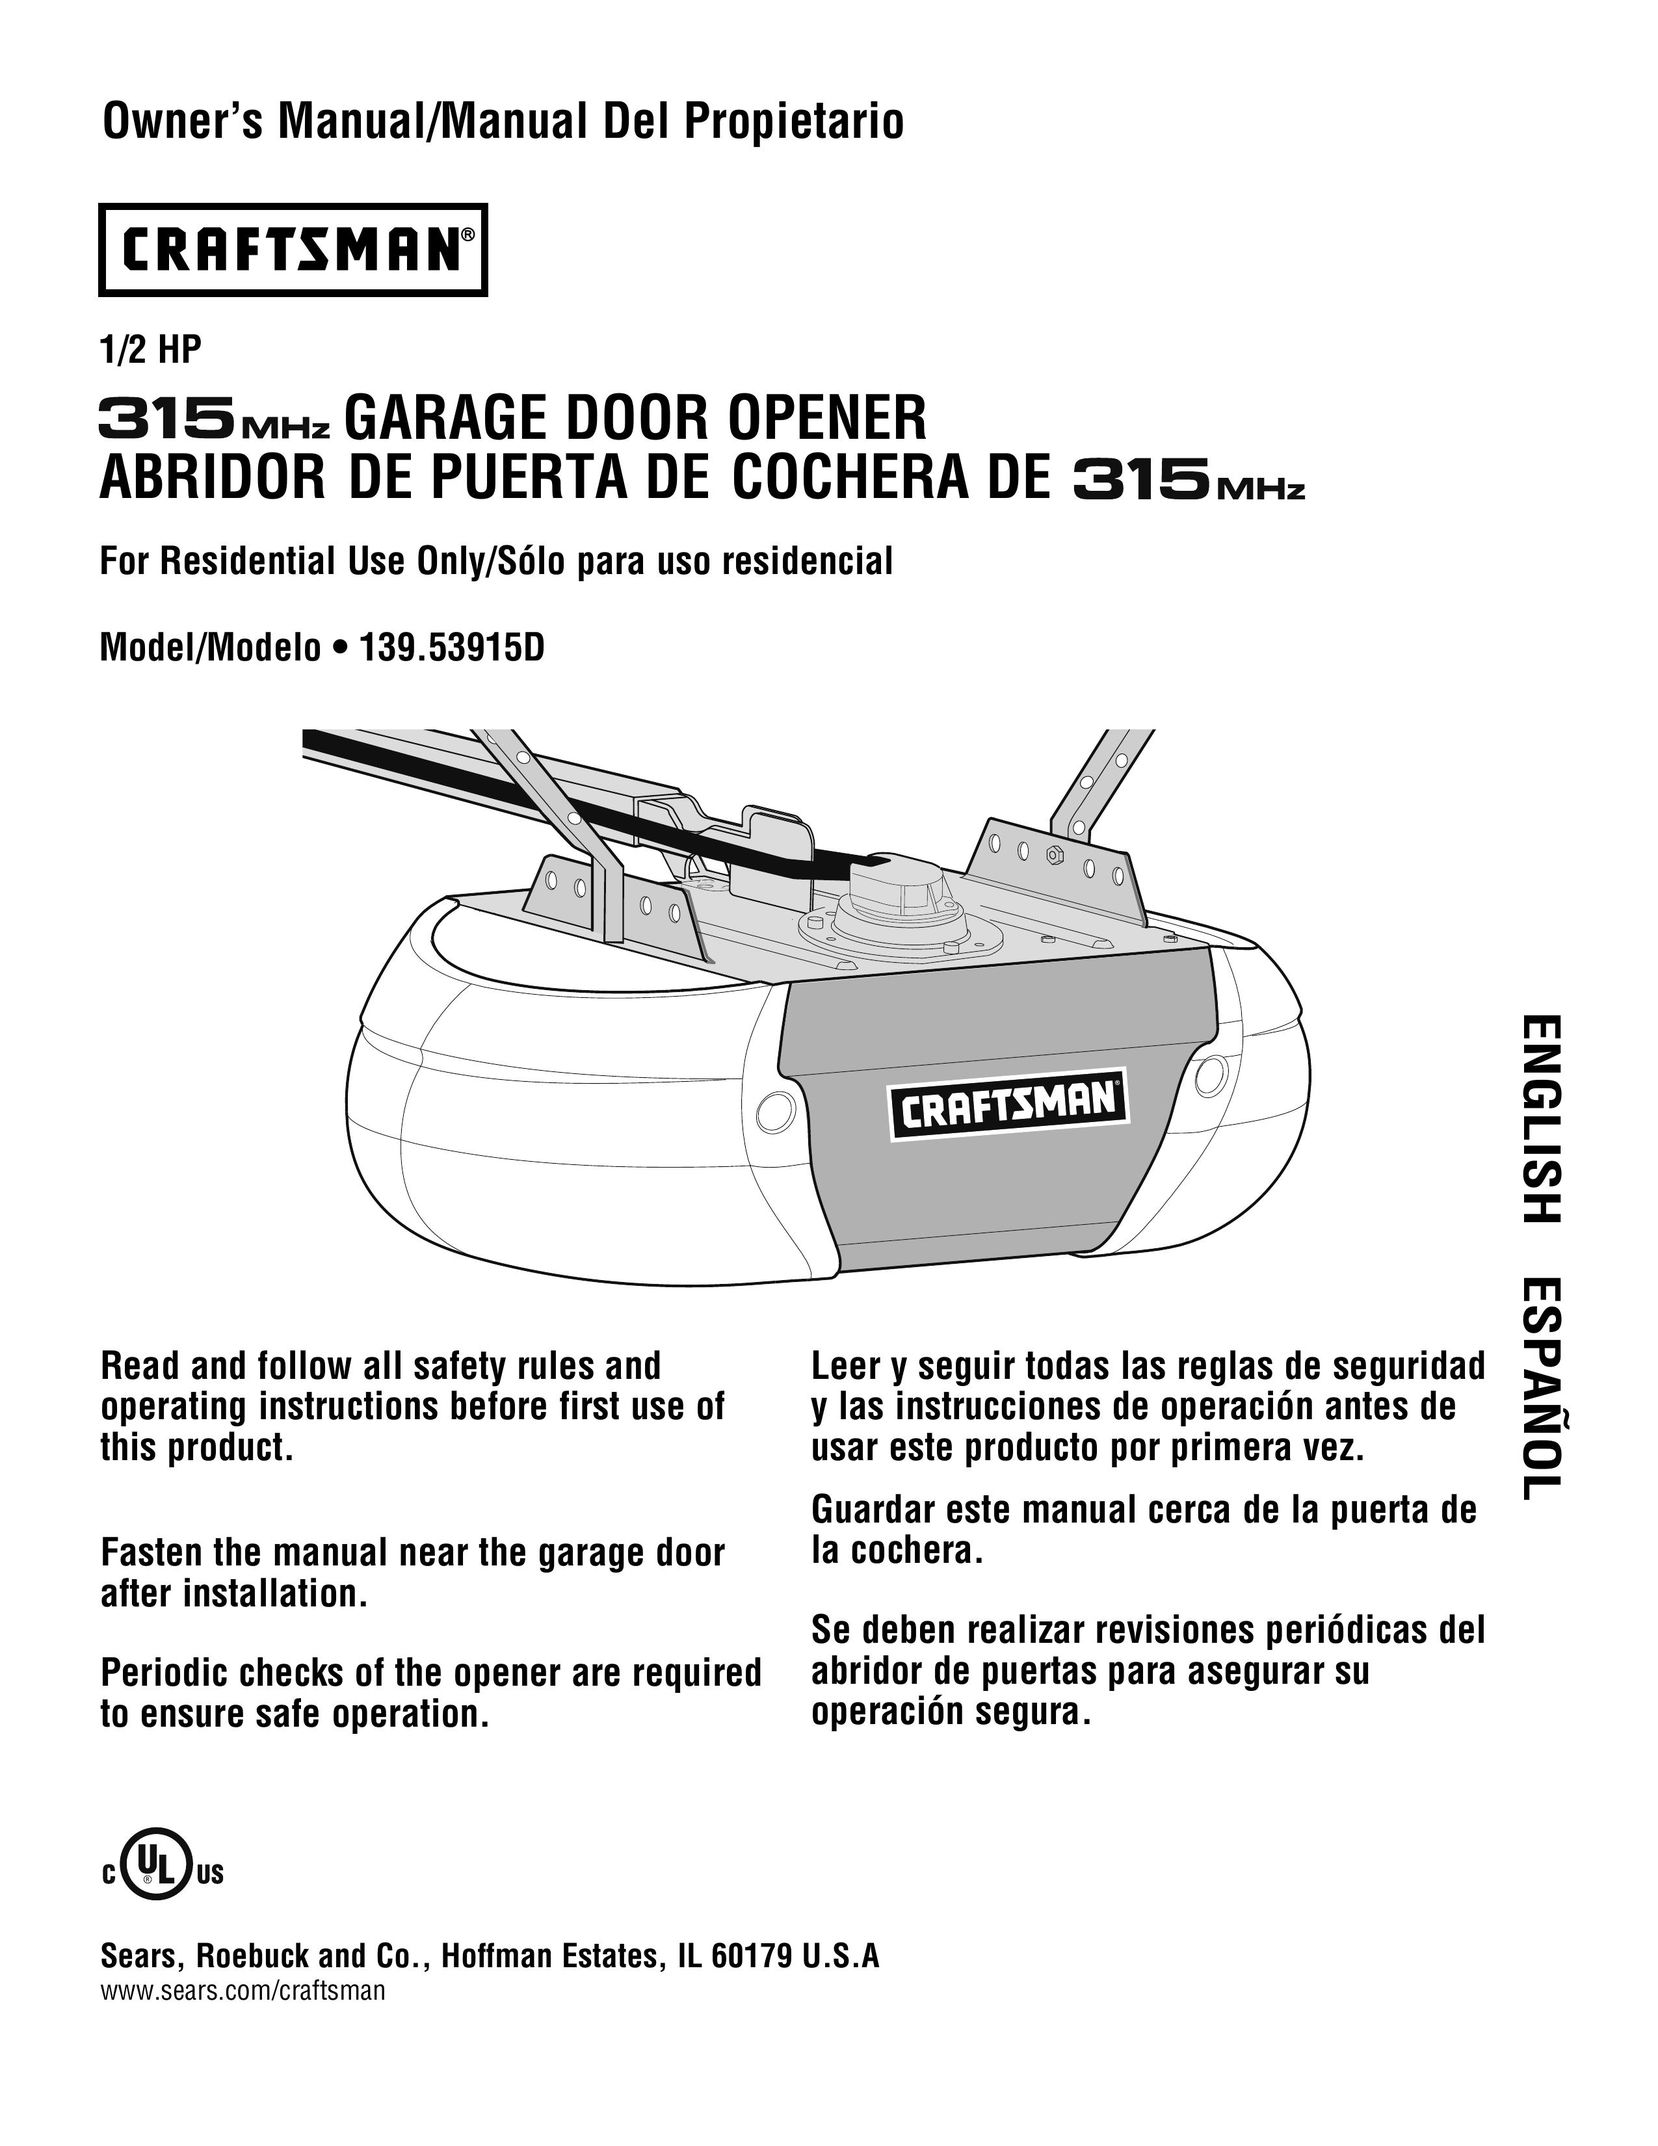 Craftsman 139.53915D Garage Door Opener User Manual